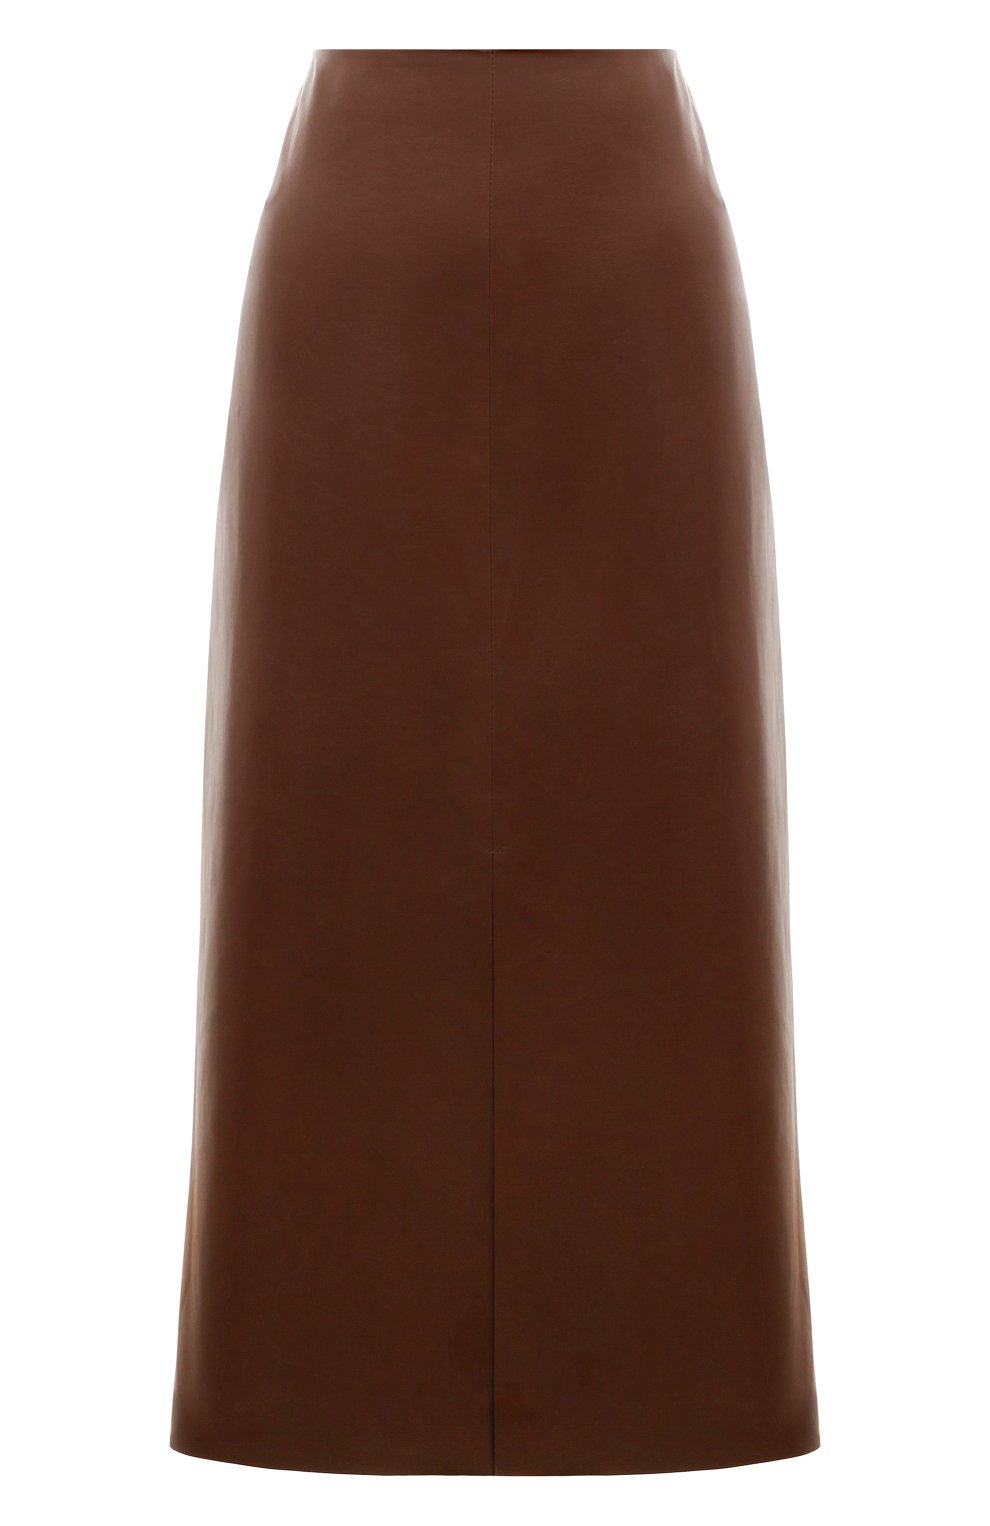 Фото Женская коричневая кожаная юбка COLOR TEMPERATURE, арт. К-3/528 Россия К-3/528 